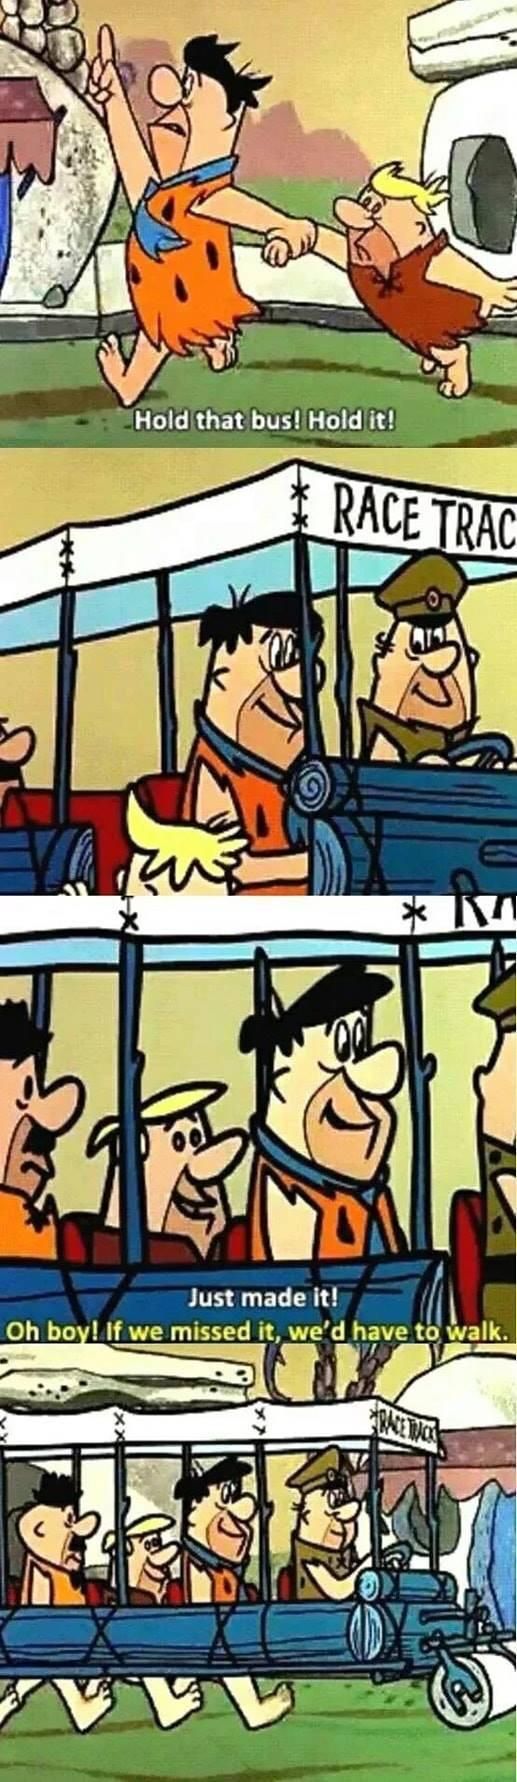 Flintstones' logic